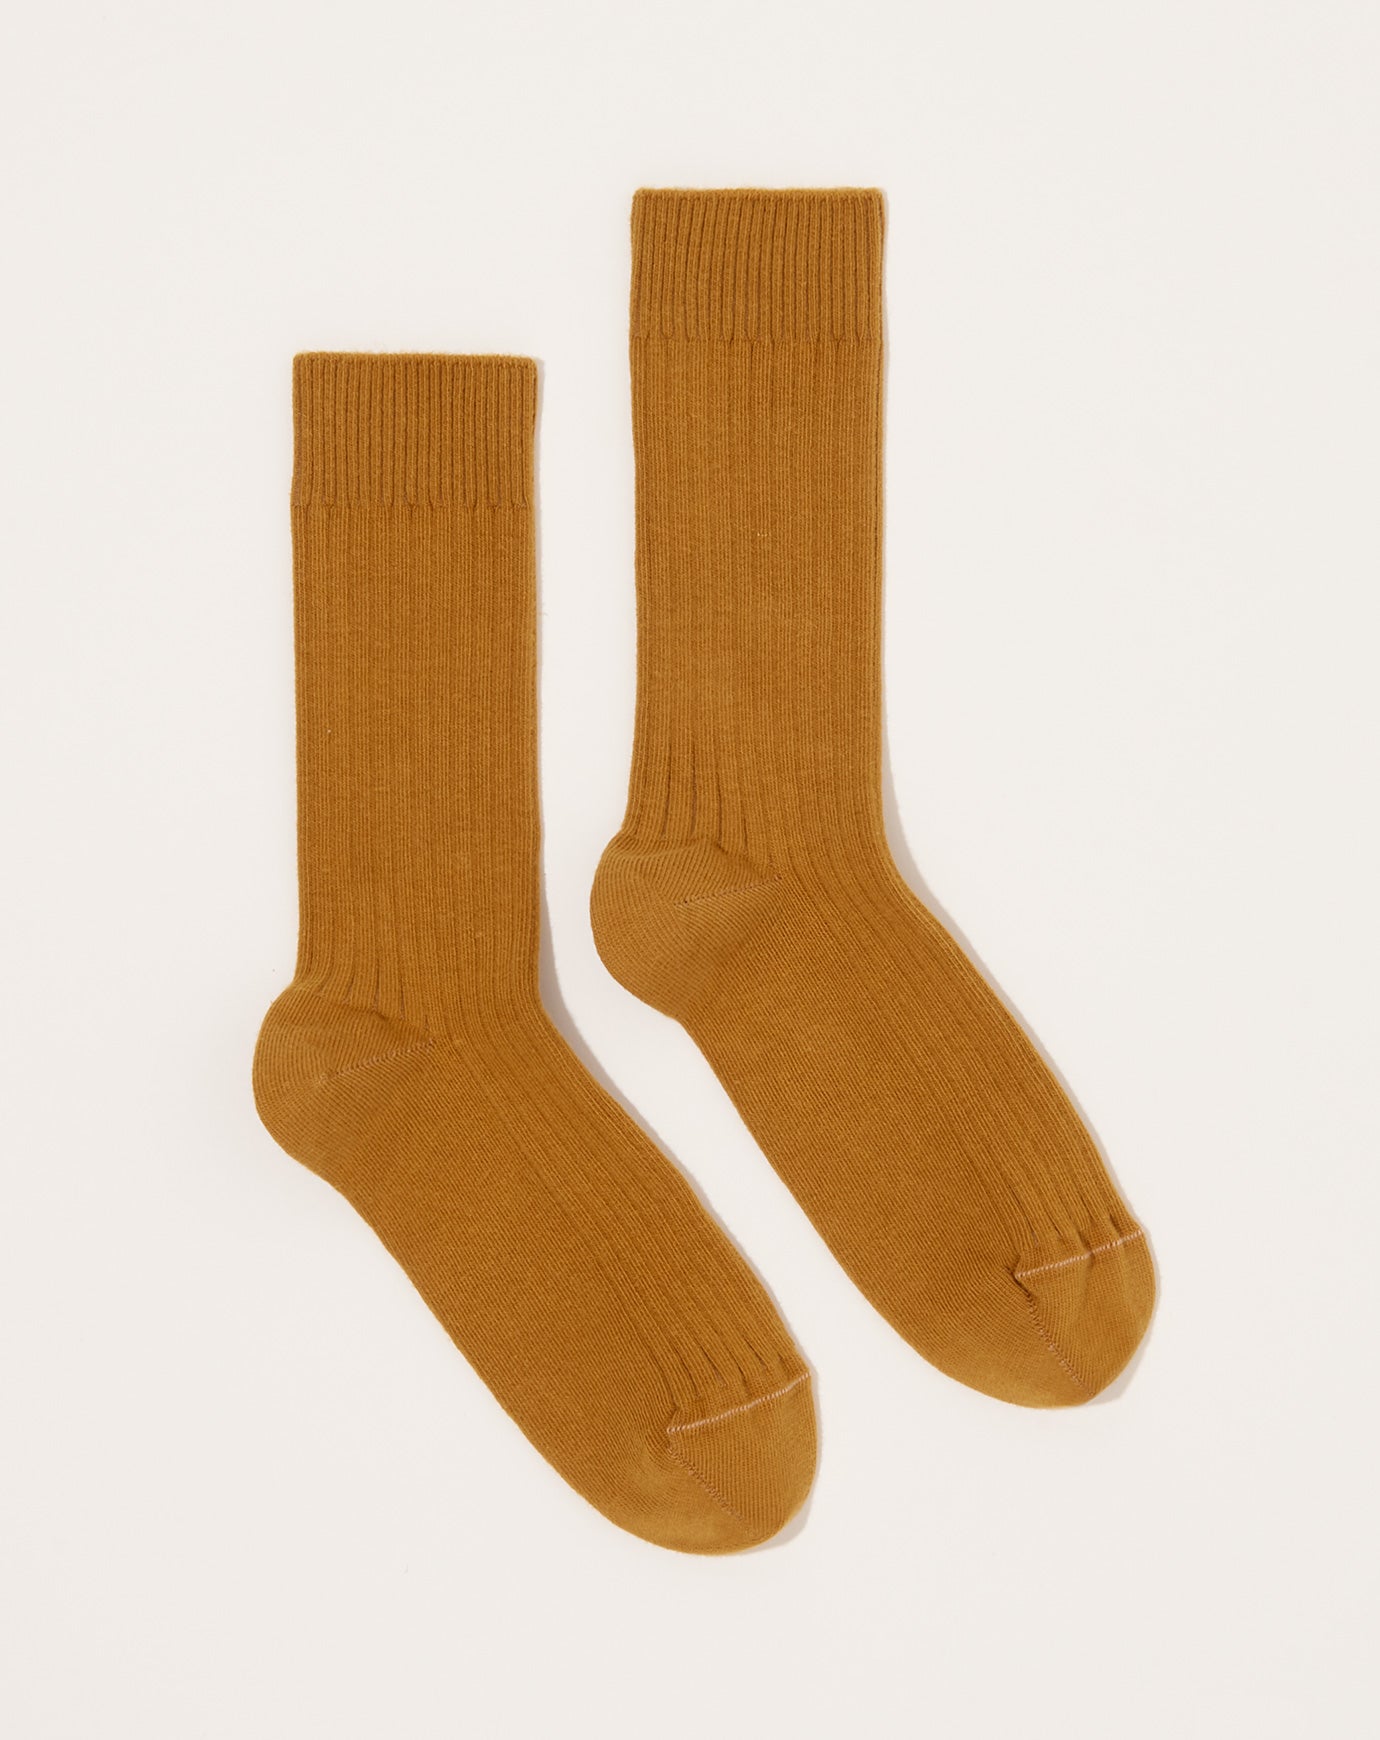 Baserange 3 Rib Overankle Socks in Combo I